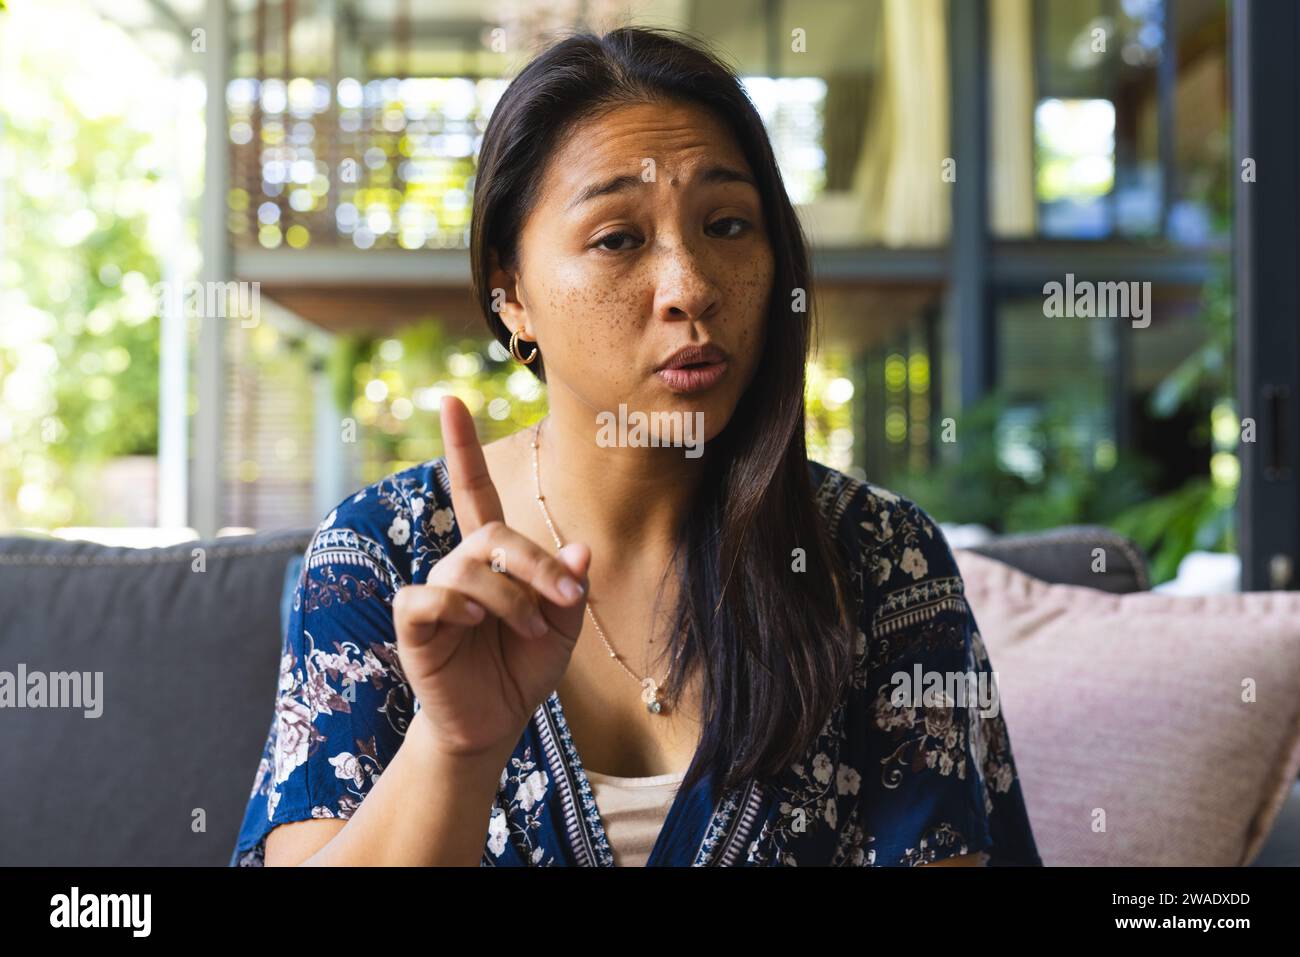 Ritratto di una donna asiatica felice con i capelli lunghi che fa videochiamata a casa. Vita domestica, tecnologia e stile di vita, inalterati. Foto Stock